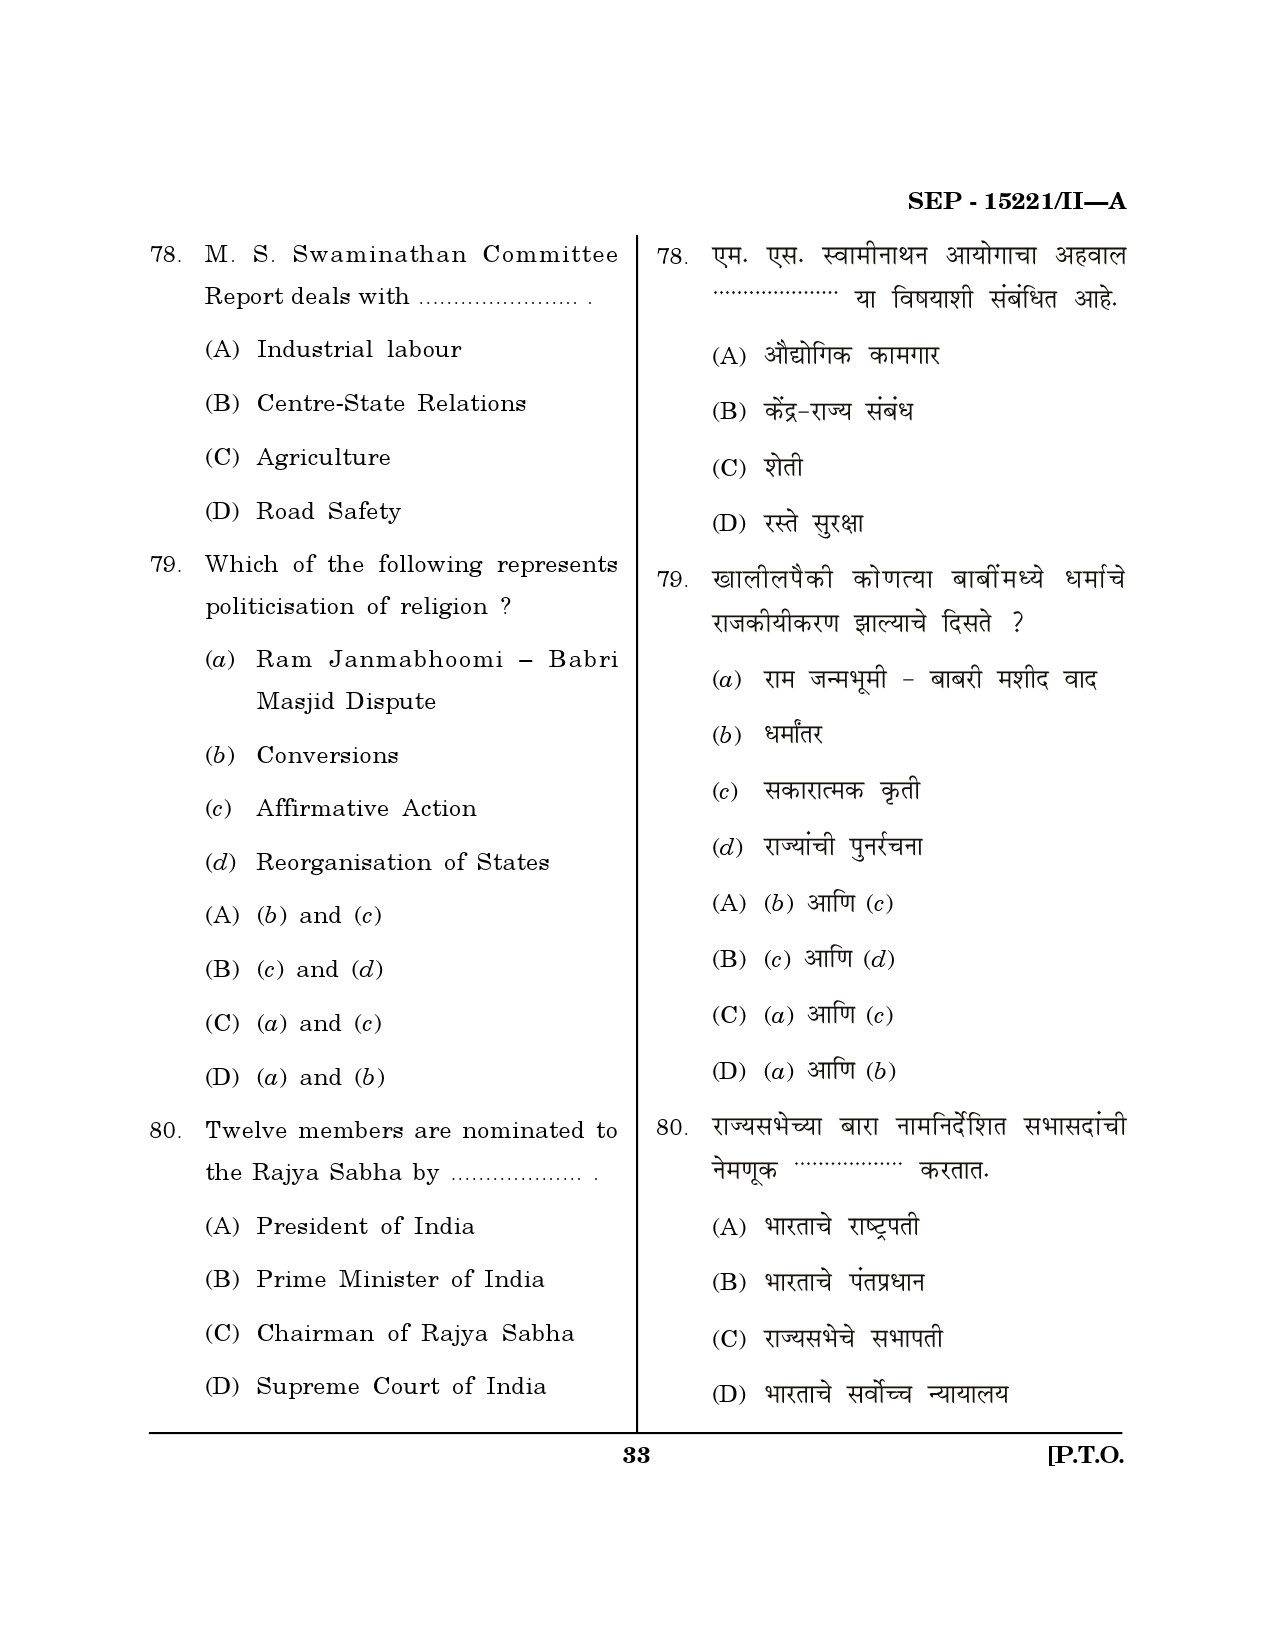 Maharashtra SET Political Science Exam Question Paper September 2021 32